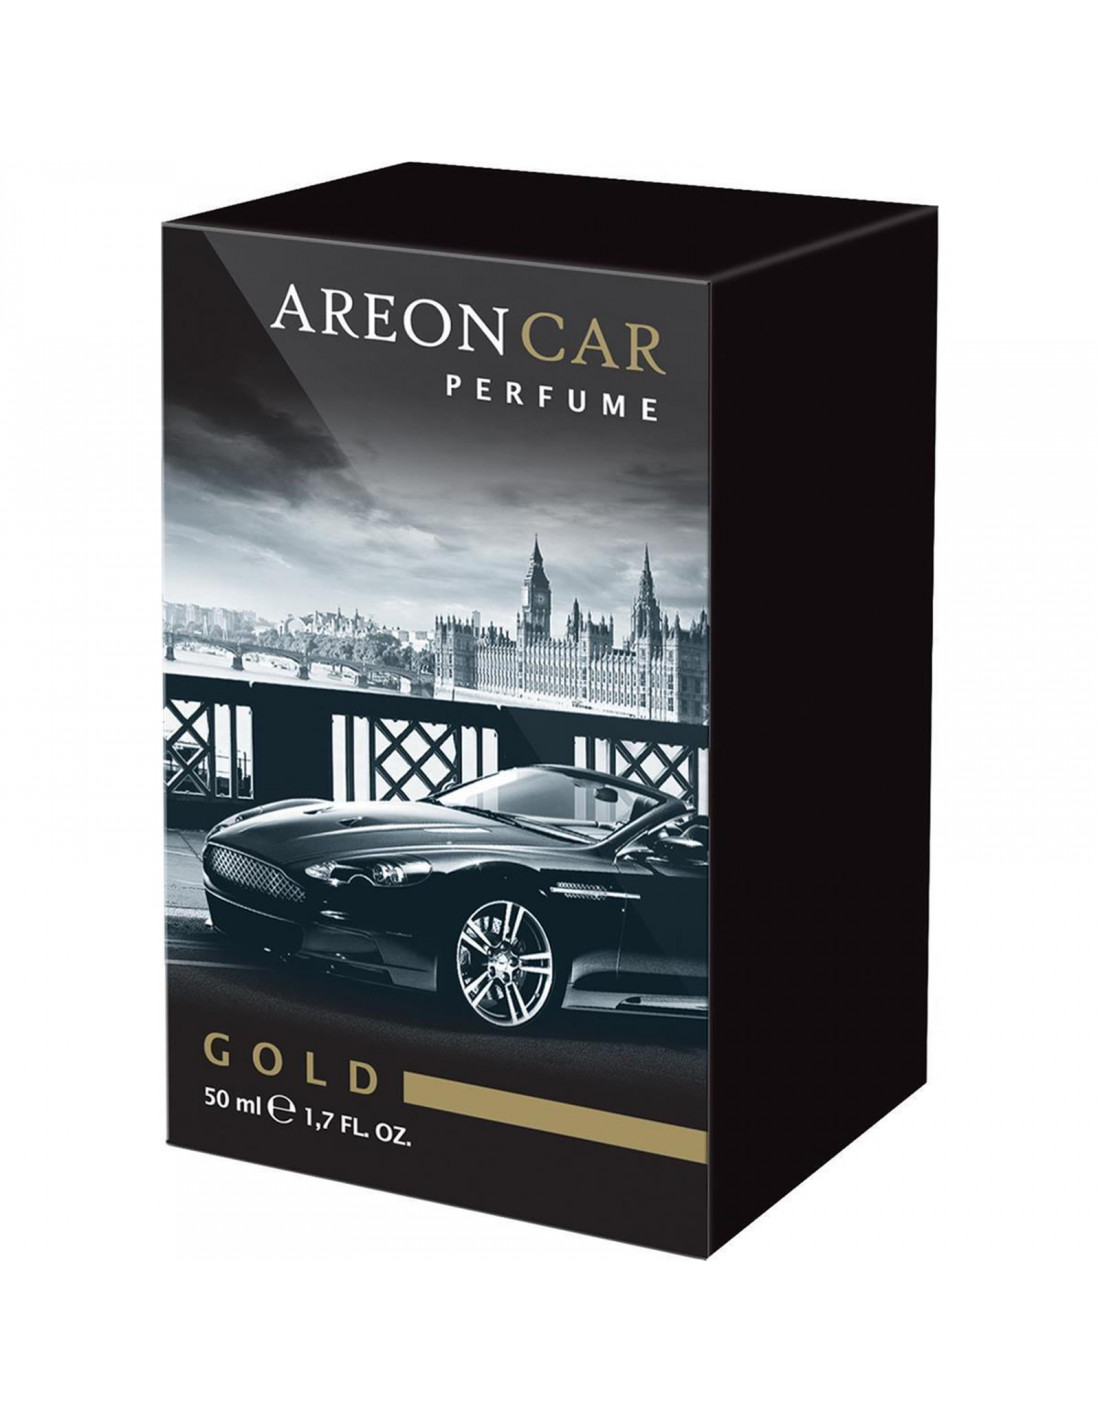 Autoduft Areon LUX CAR Parfüm 50ml. Gold   die premium  Autoduft Parfümerie